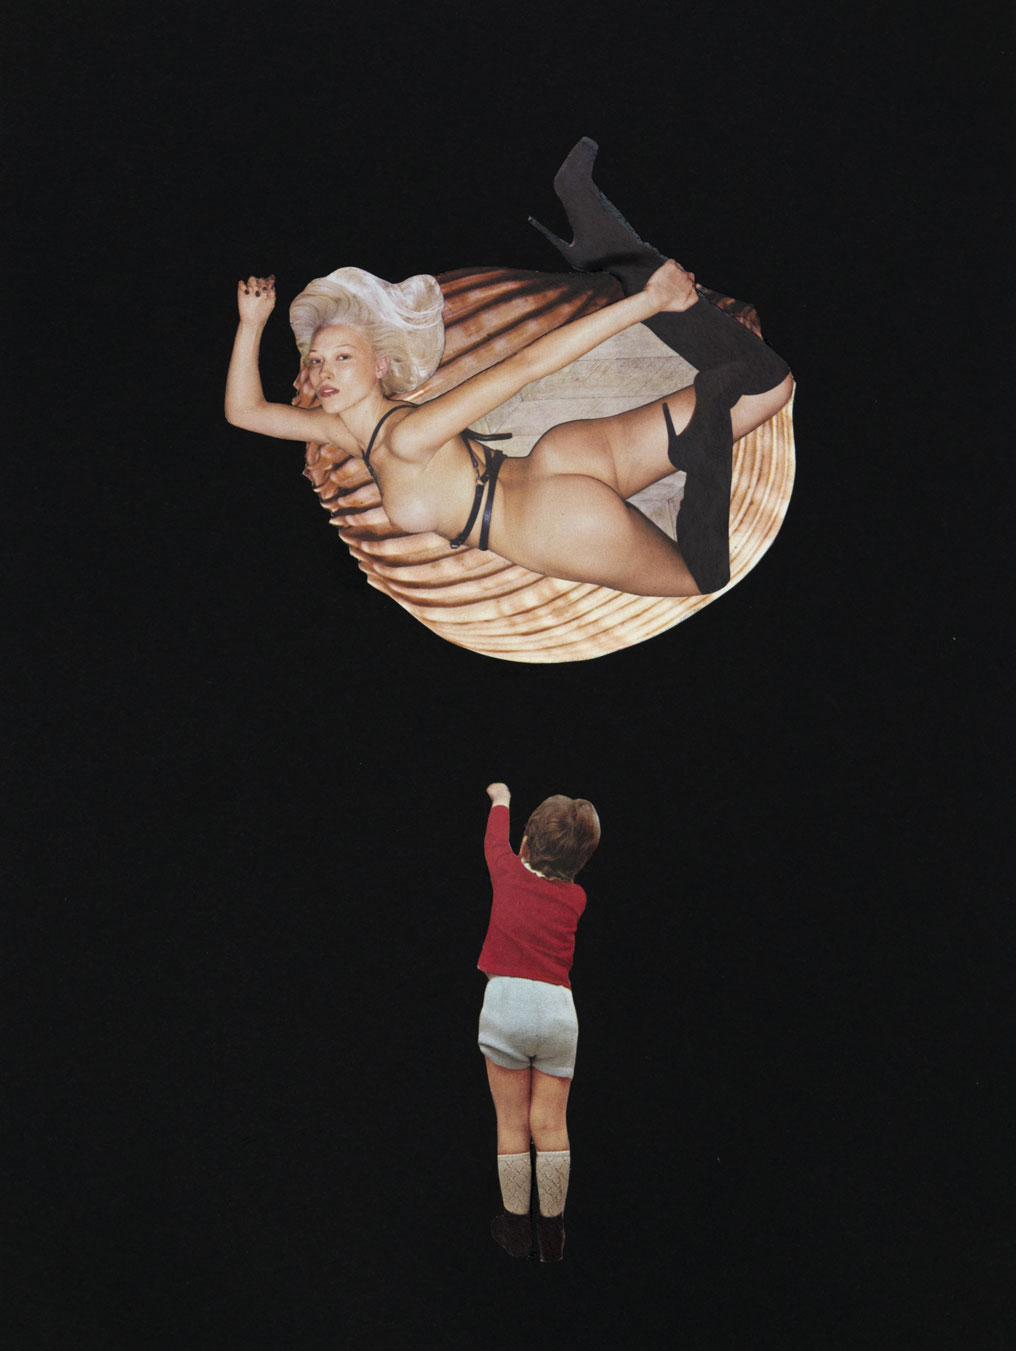  Milena 30,2 x 22,2 cm Collage sur papier 2017   